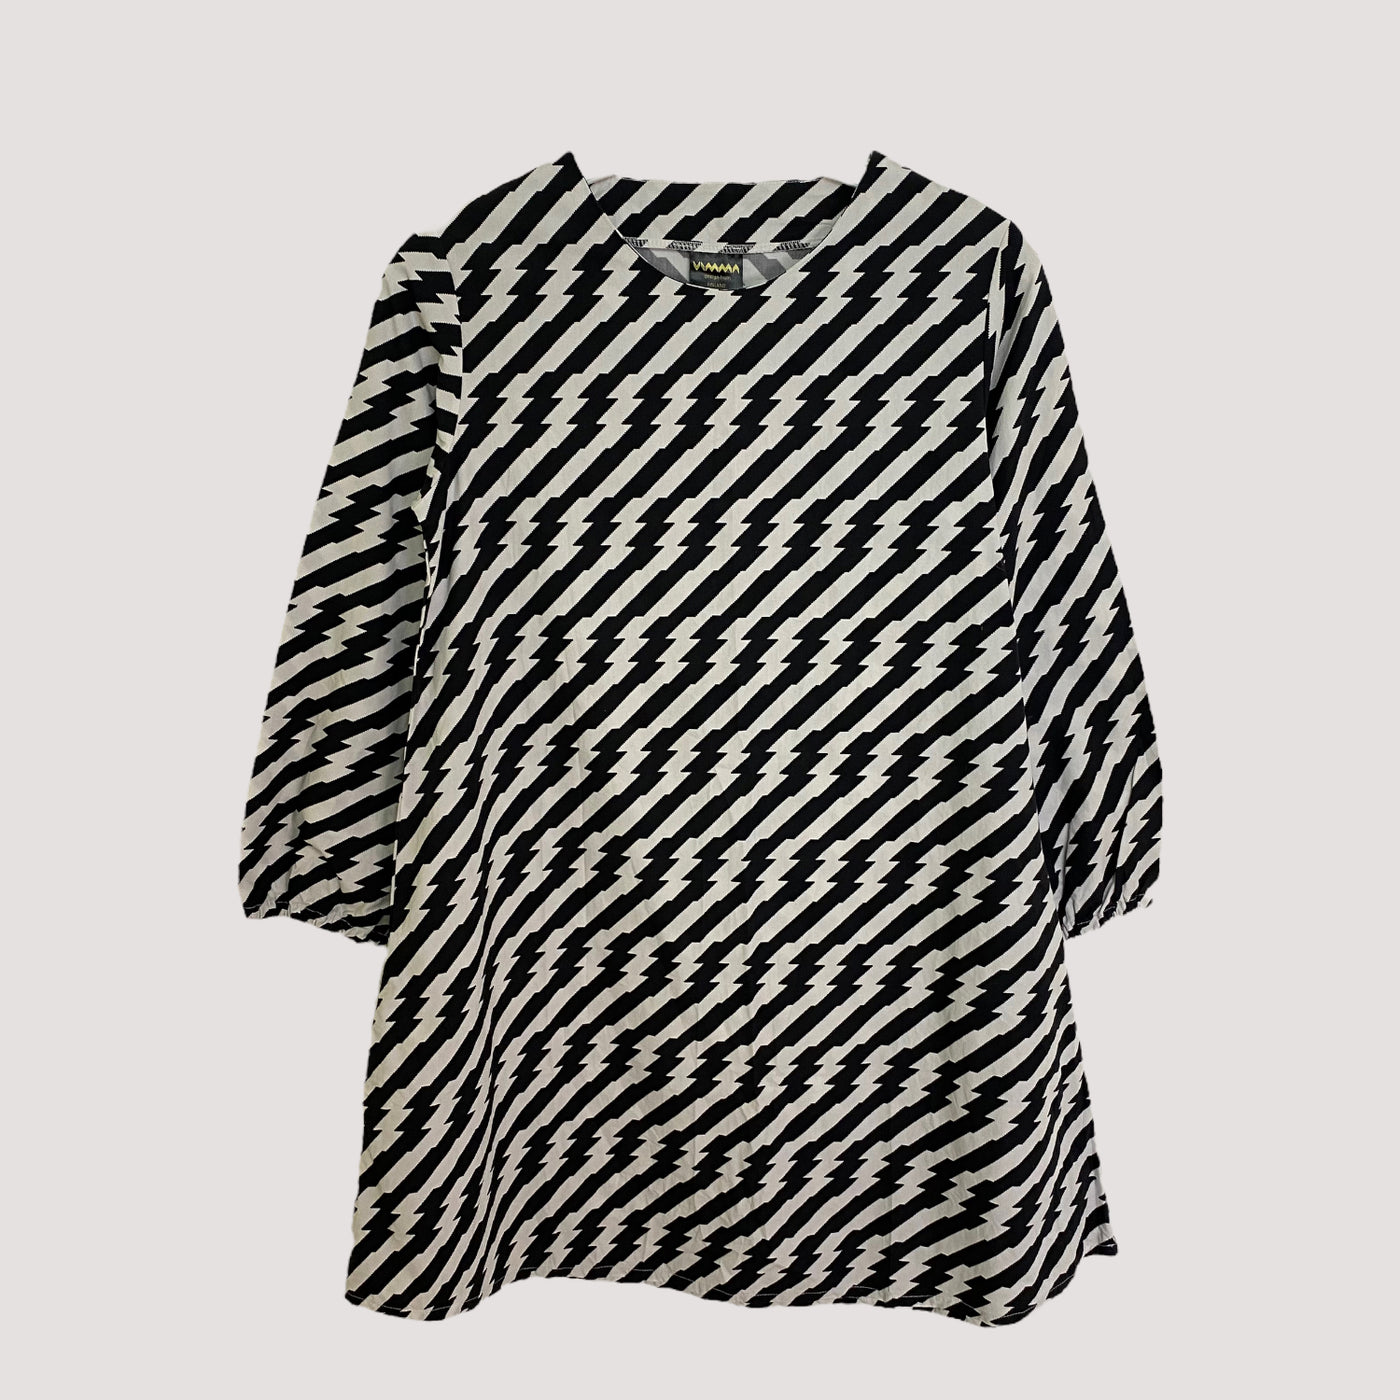 Vimma dress, black/white | 140cm